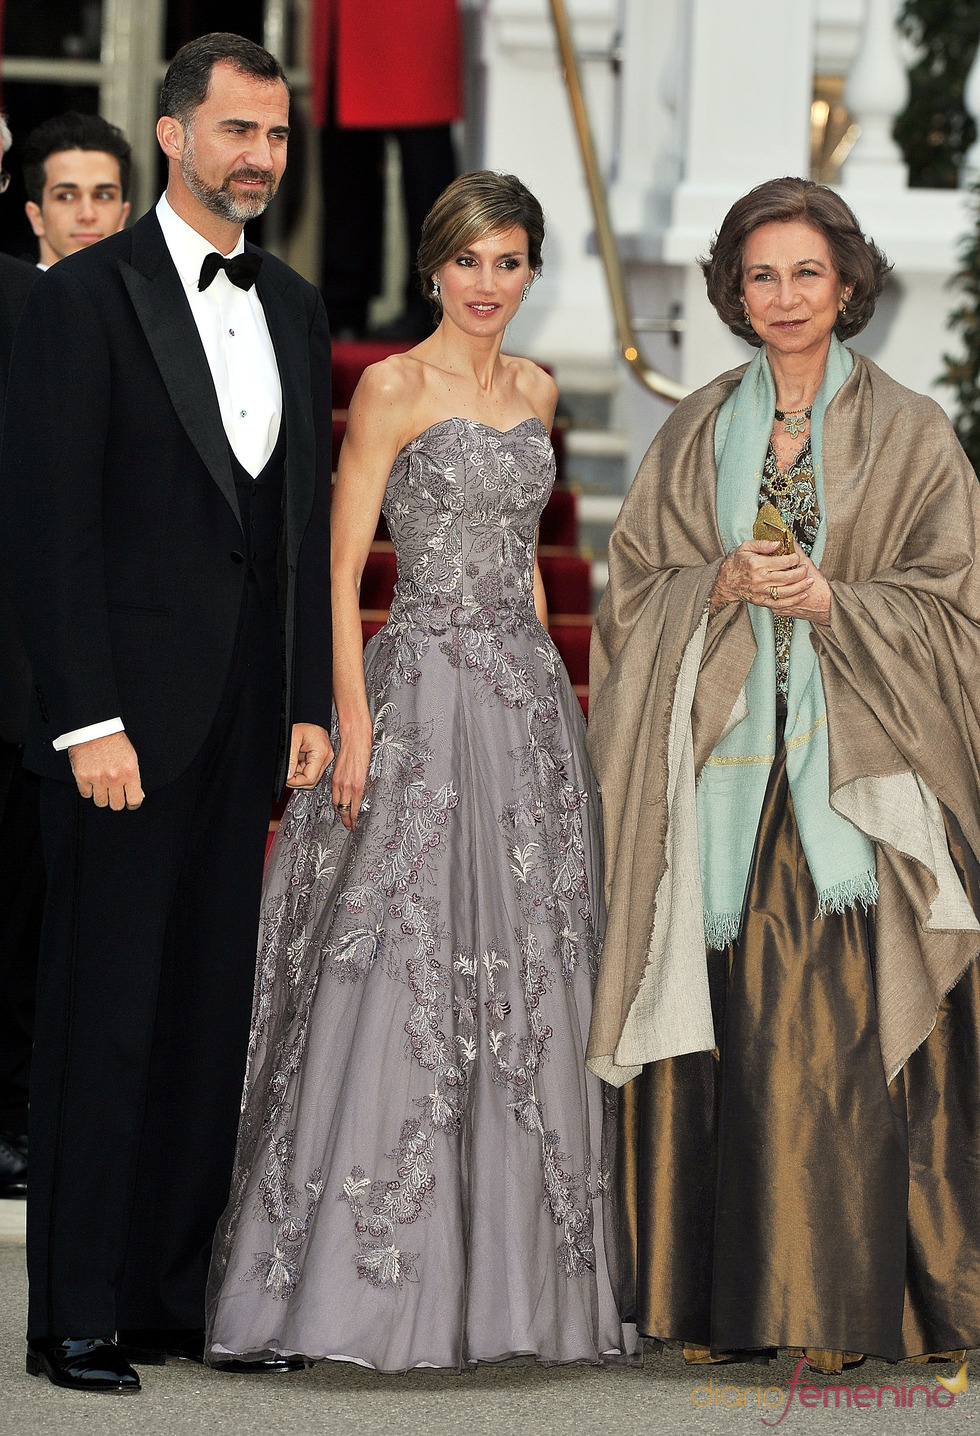 La Reina Sofía y los Príncipes Felipe y Letizia en la cena pre-boda real de Inglaterra